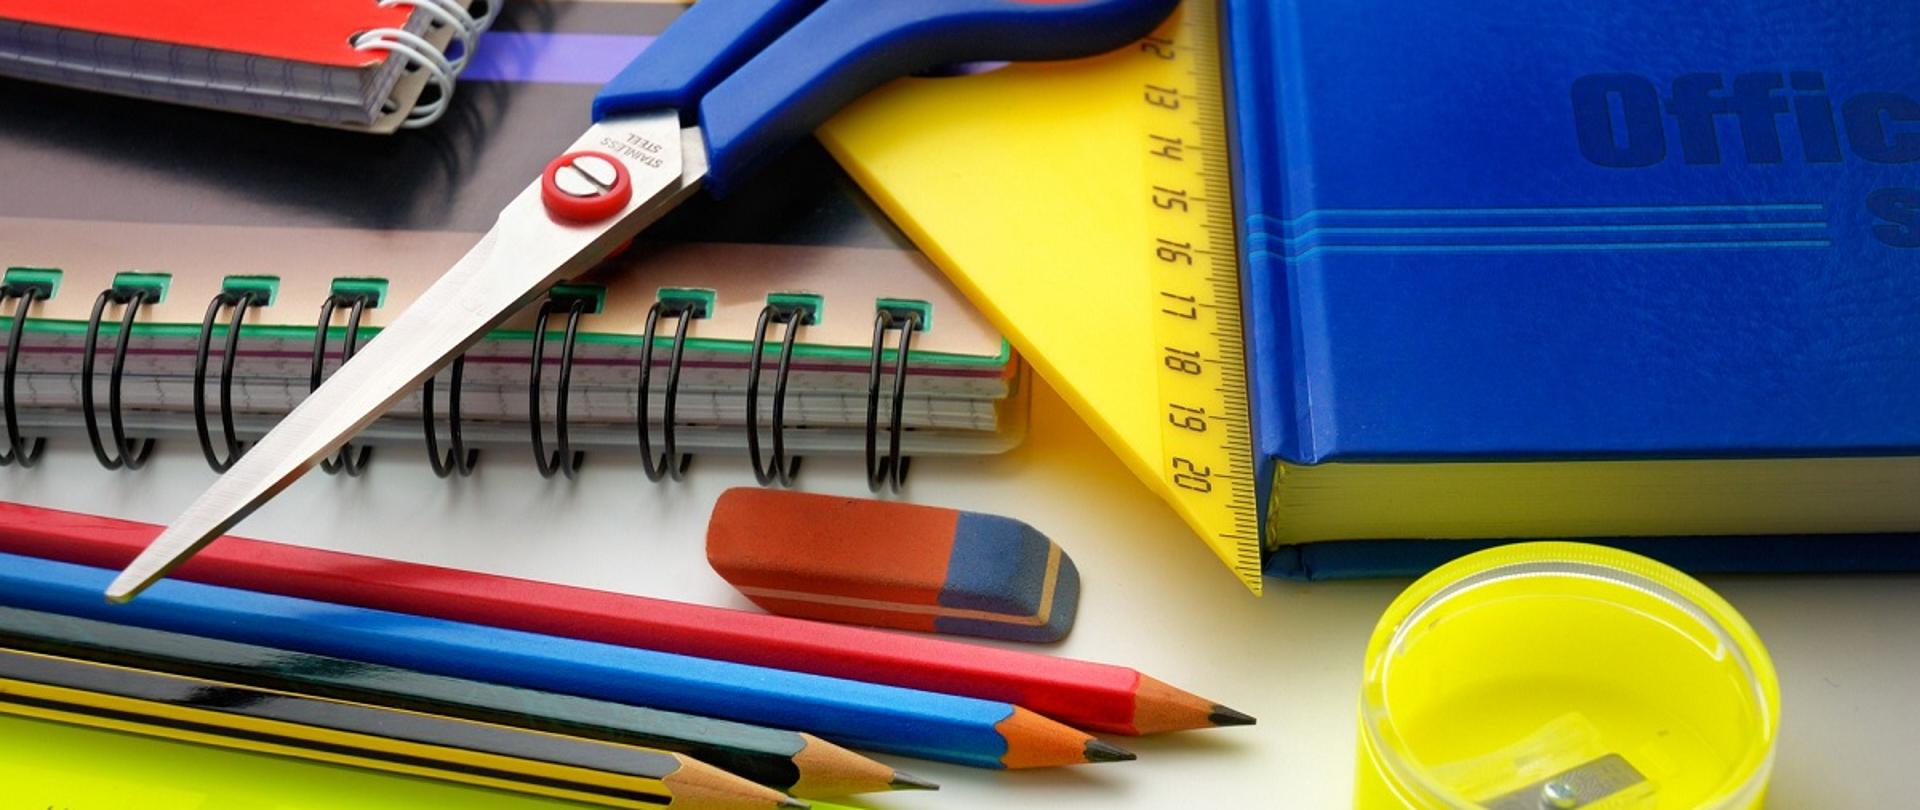 przybory szkolne - linijka, ekierka, ołówki, gumka do mazania, nożyczki, zeszyty